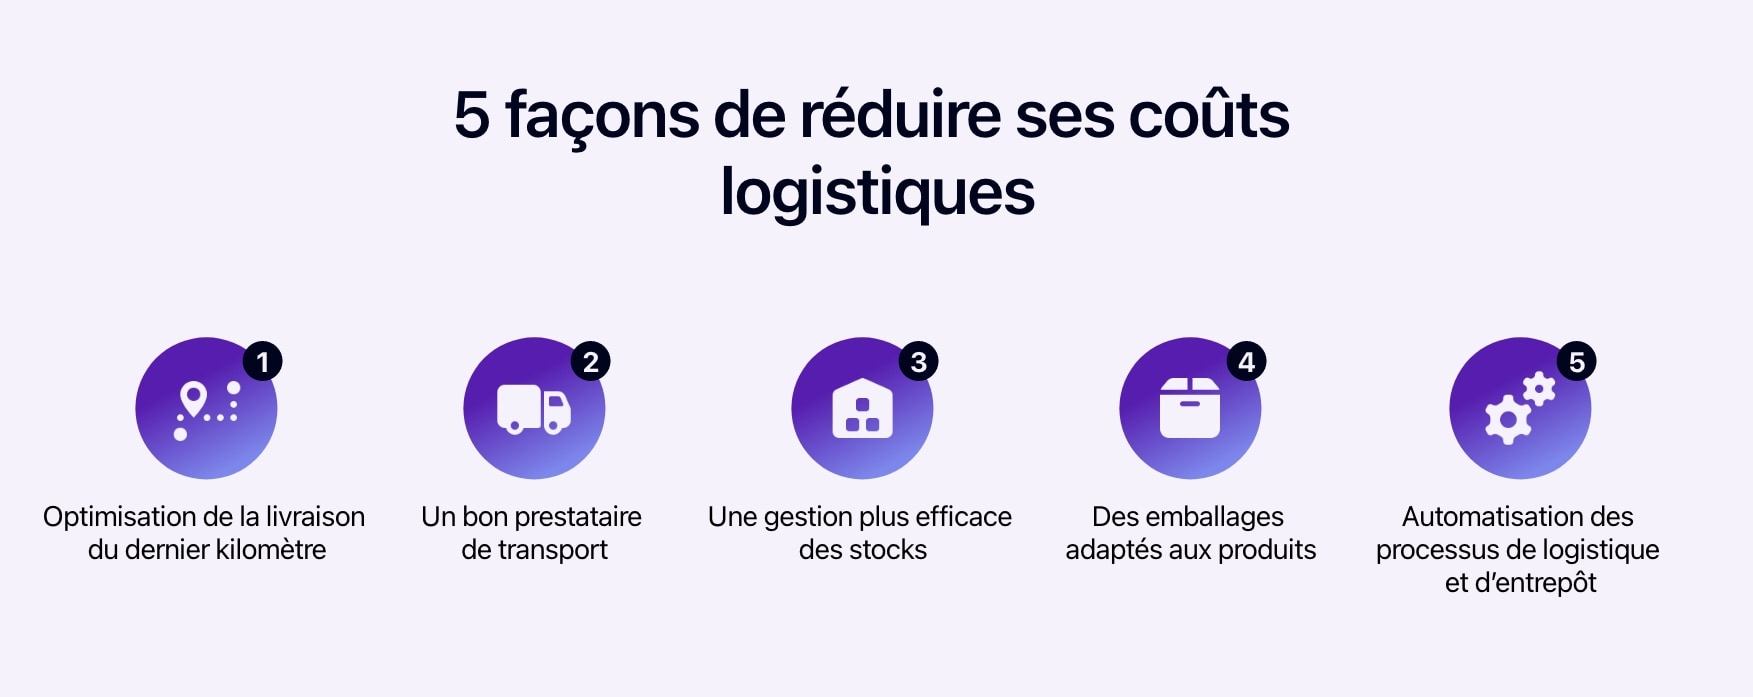 Schéma présentant 5 façons de réduire ses coûts logistiques.